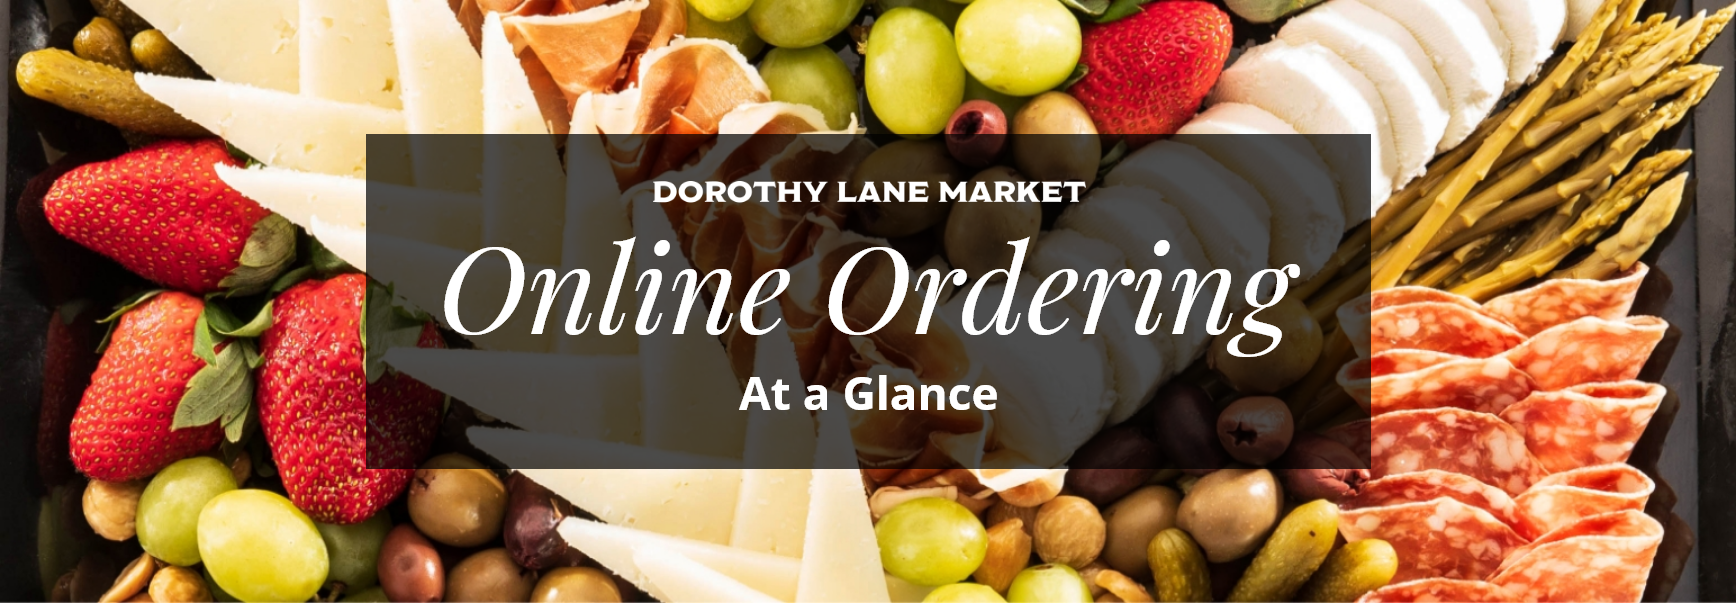 Dorothy Lane Market Online Ordering At-a-Glance